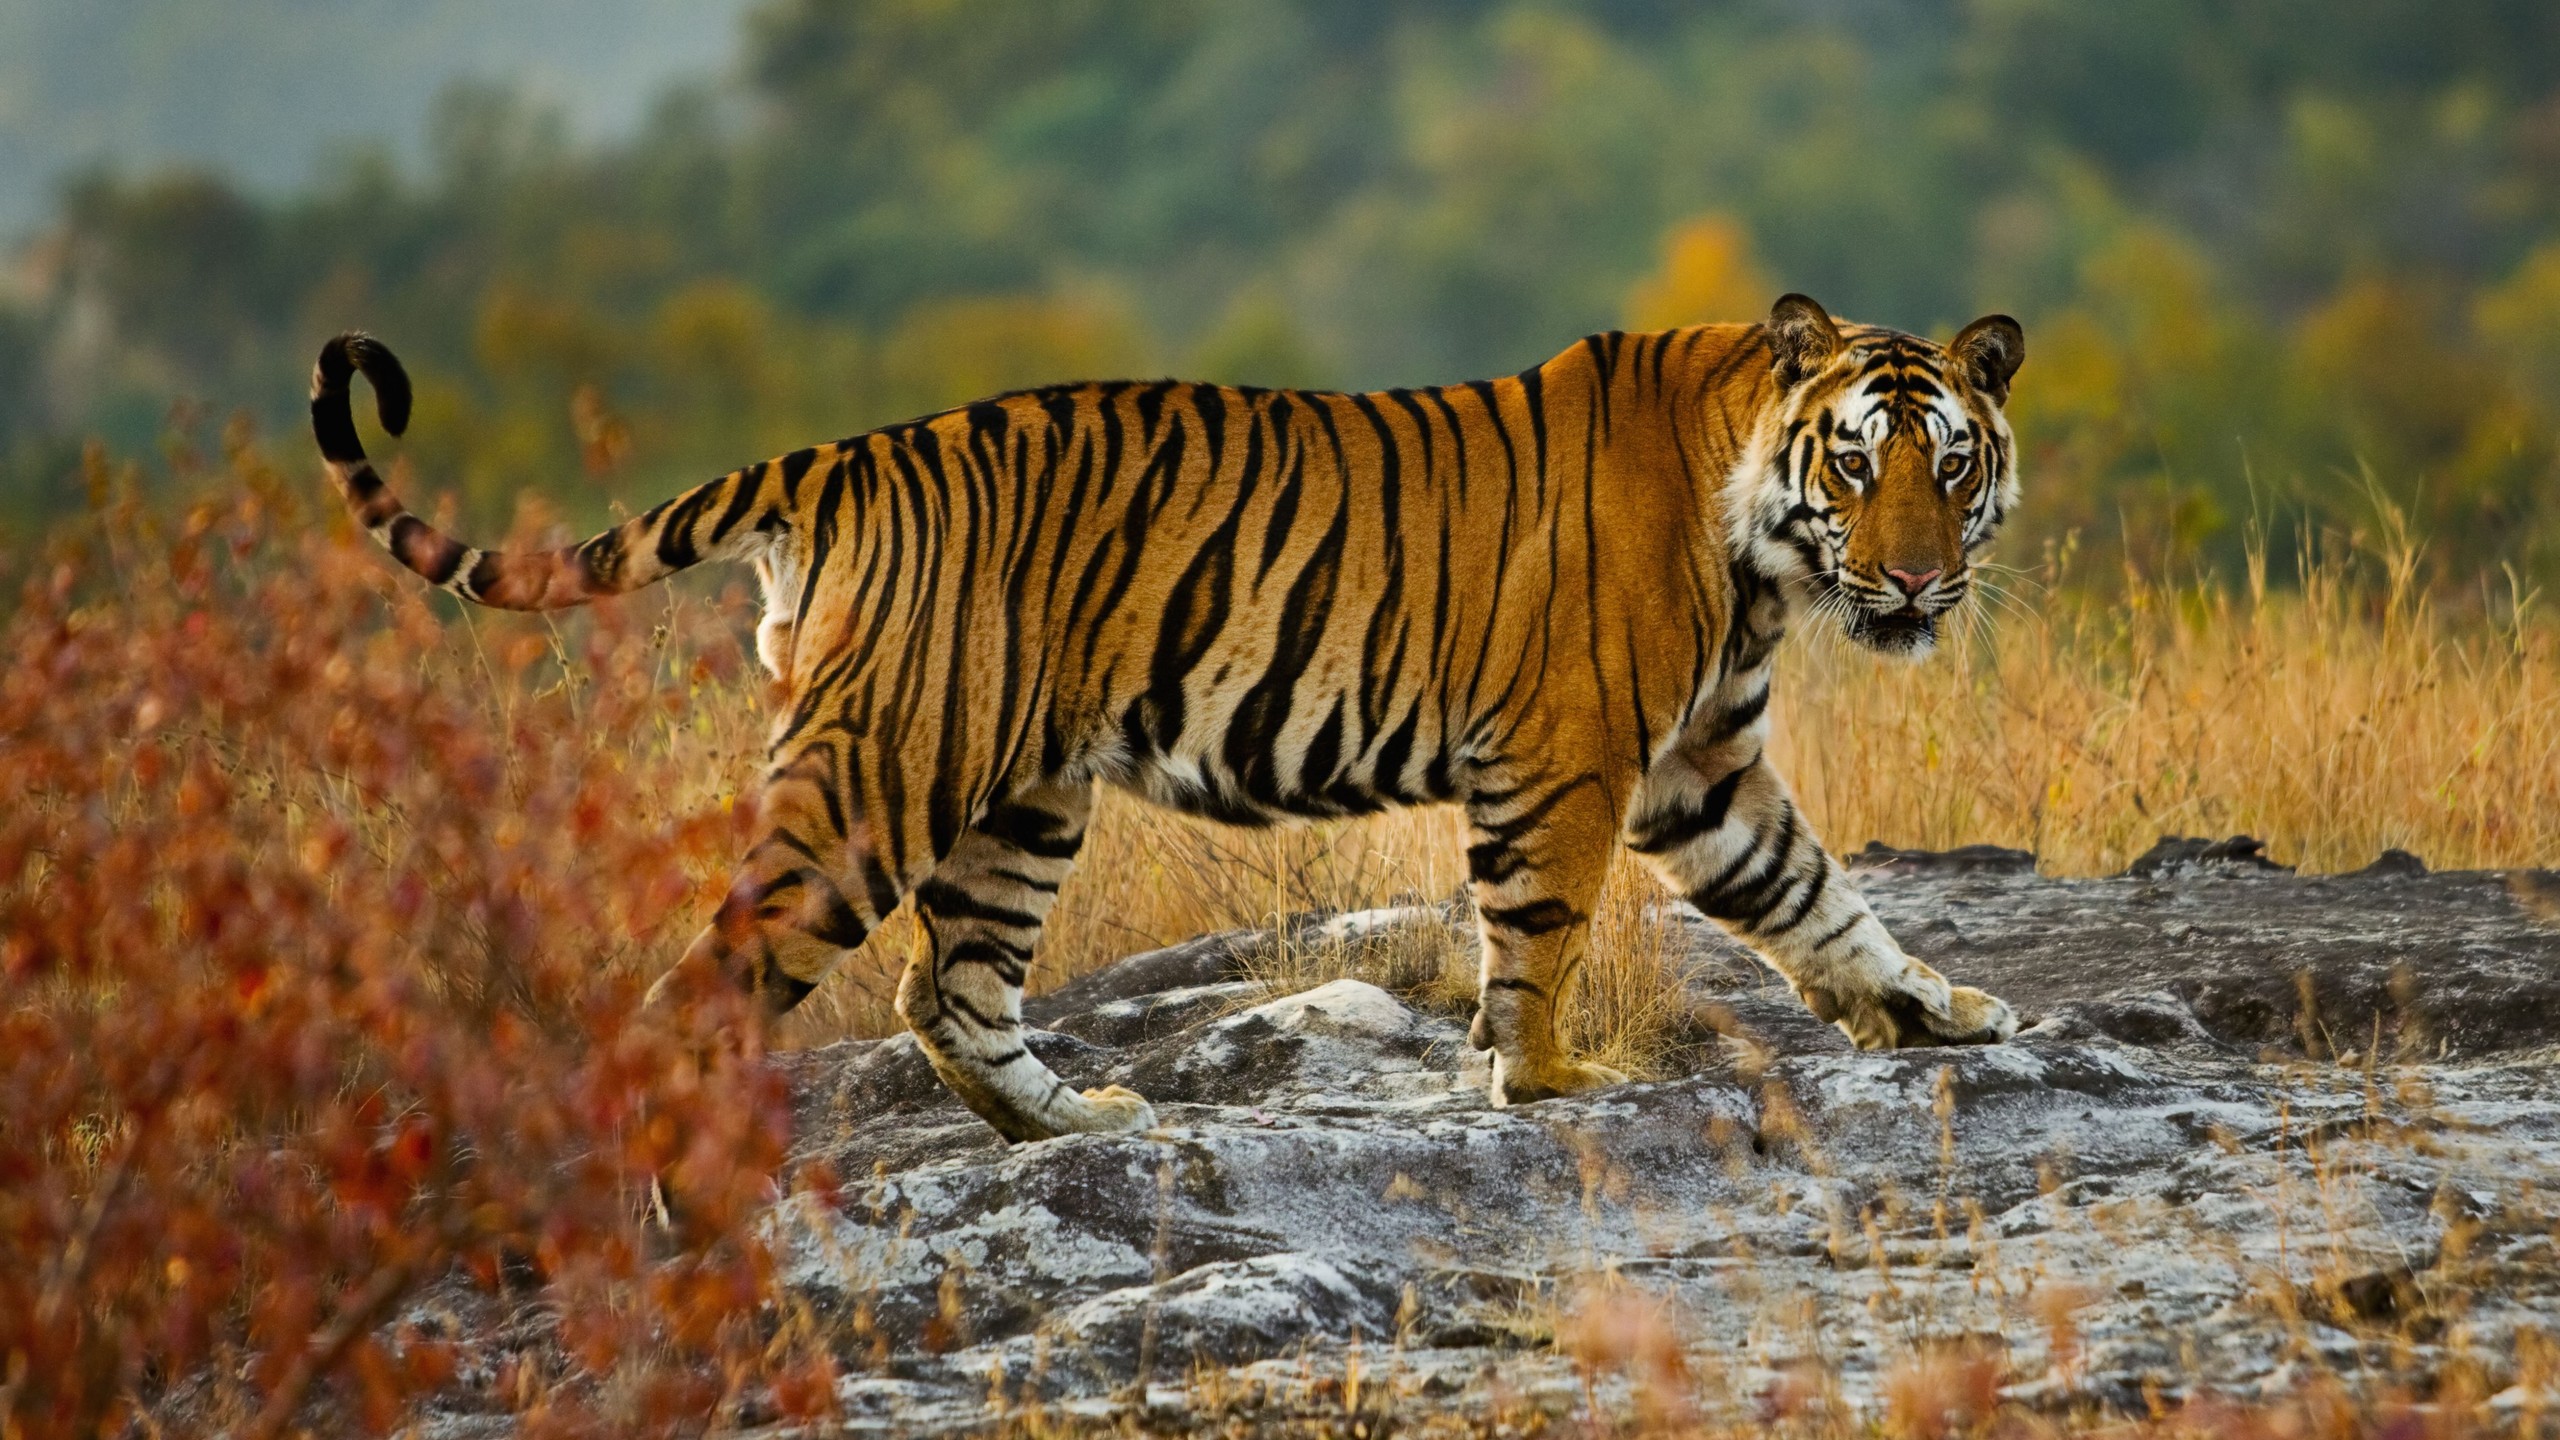 Hình nền con hổ đẹp: Cảm nhận tinh hoa vẻ đẹp tự nhiên với hình nền con hổ đẹp. Hình ảnh này sẽ mang đến cho bạn sự bình yên và sự tĩnh lặng bên cạnh tinh túy hoang dã mà hổ đại diện cho.